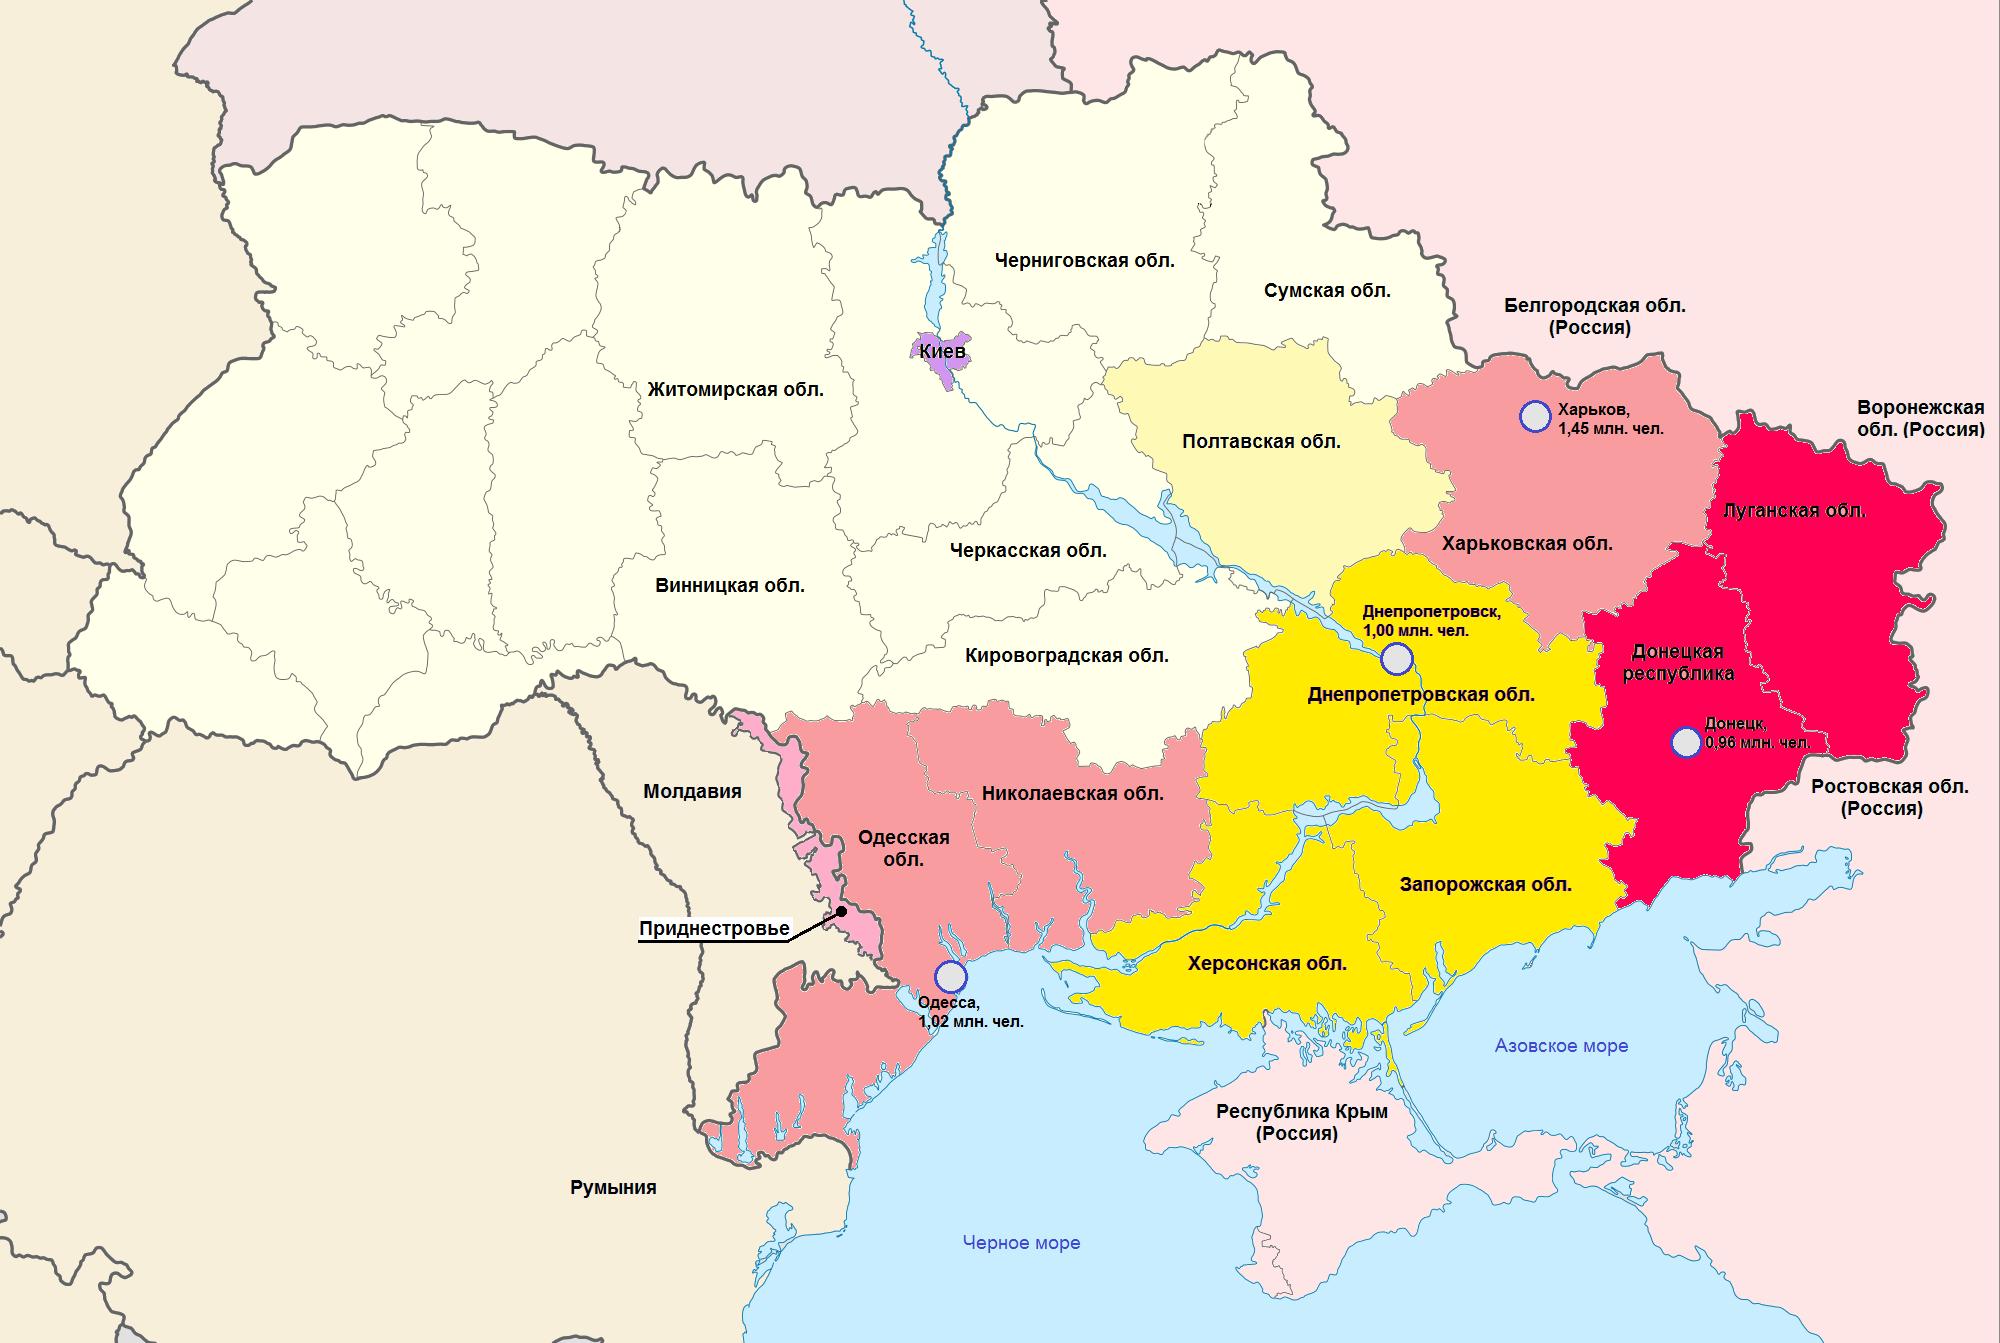 Как проходит граница украины. Донбасс на карте Украины и России. Донбасс на карте Украины. Карта Донбасса и Луганска на Украине. УКРАИНАДОНБАС на кврте.